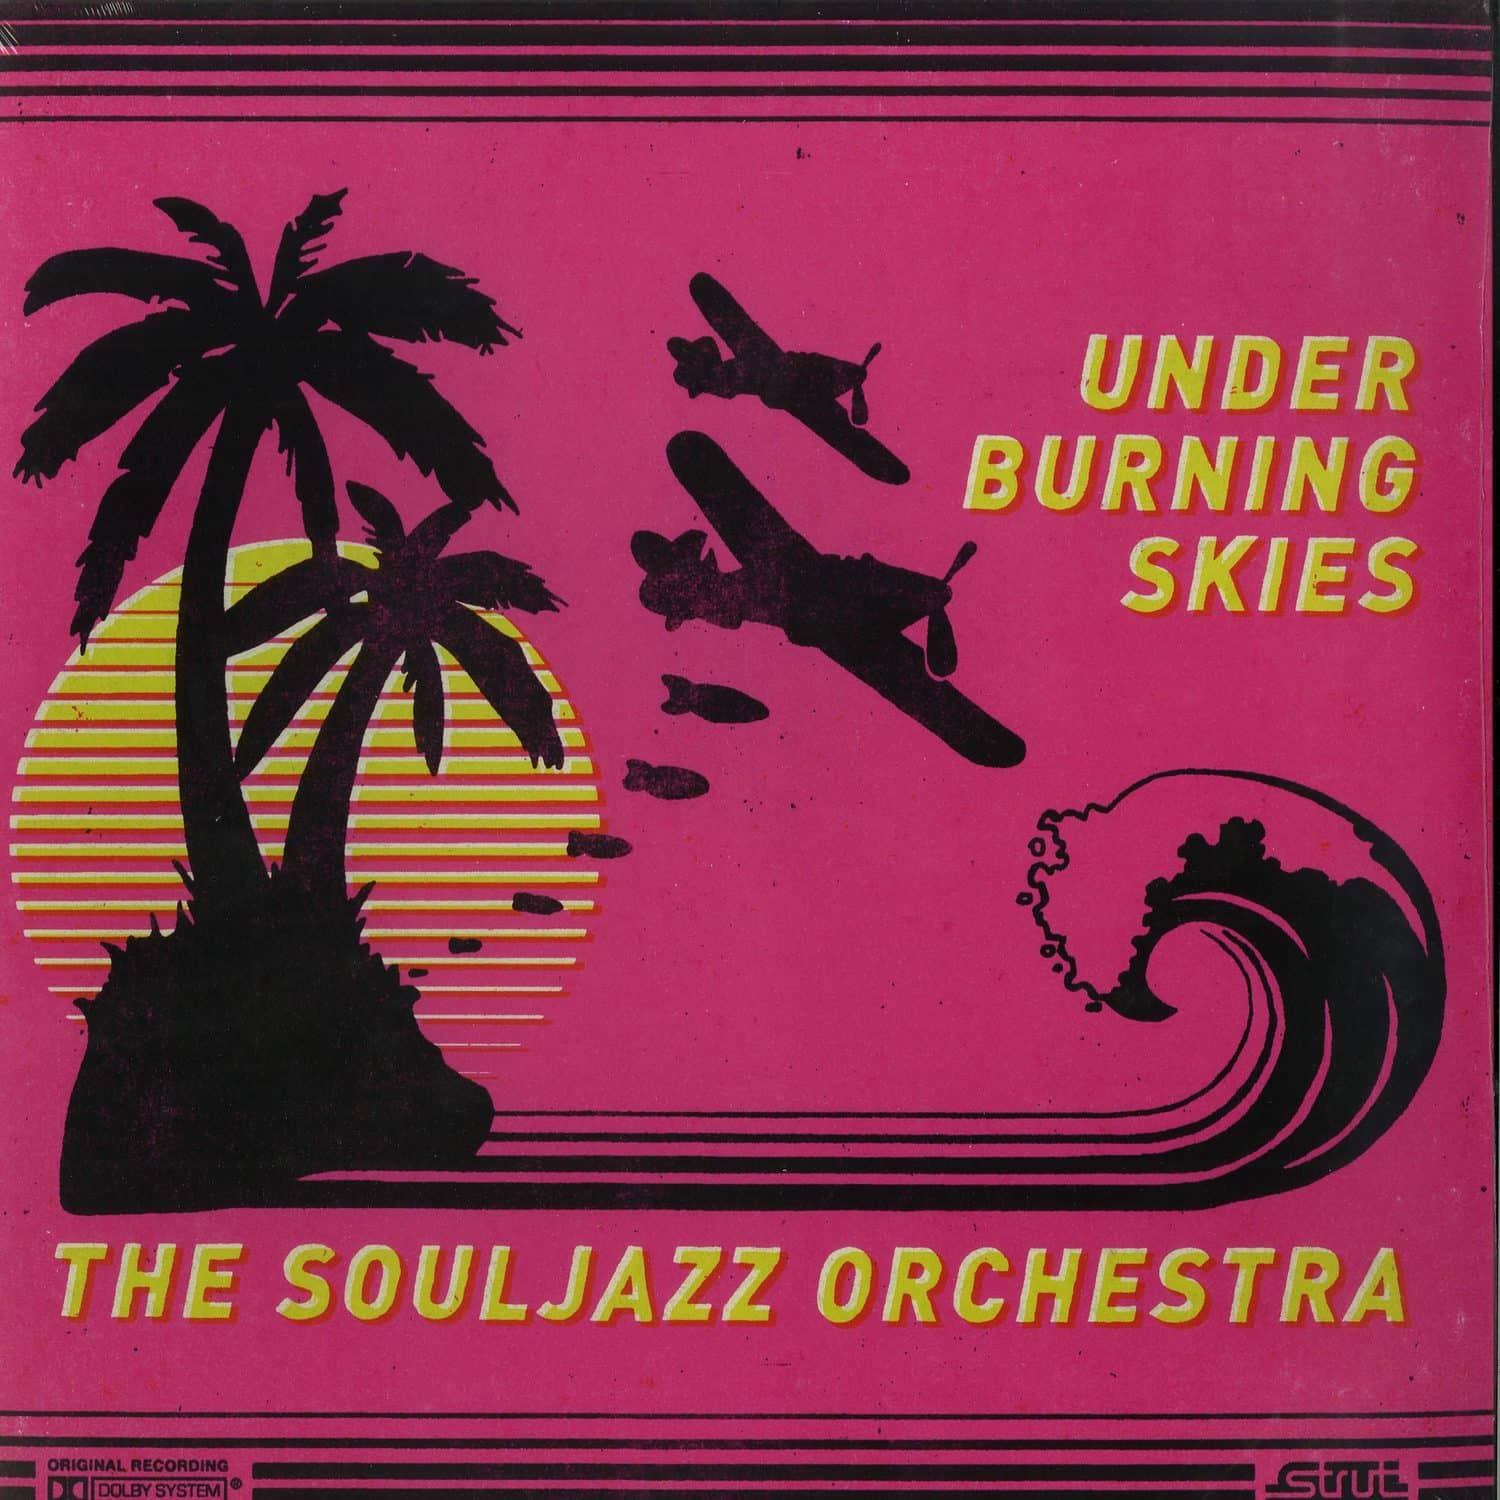 The Souljazz Orchestra - UNDER BURNING SKIES 